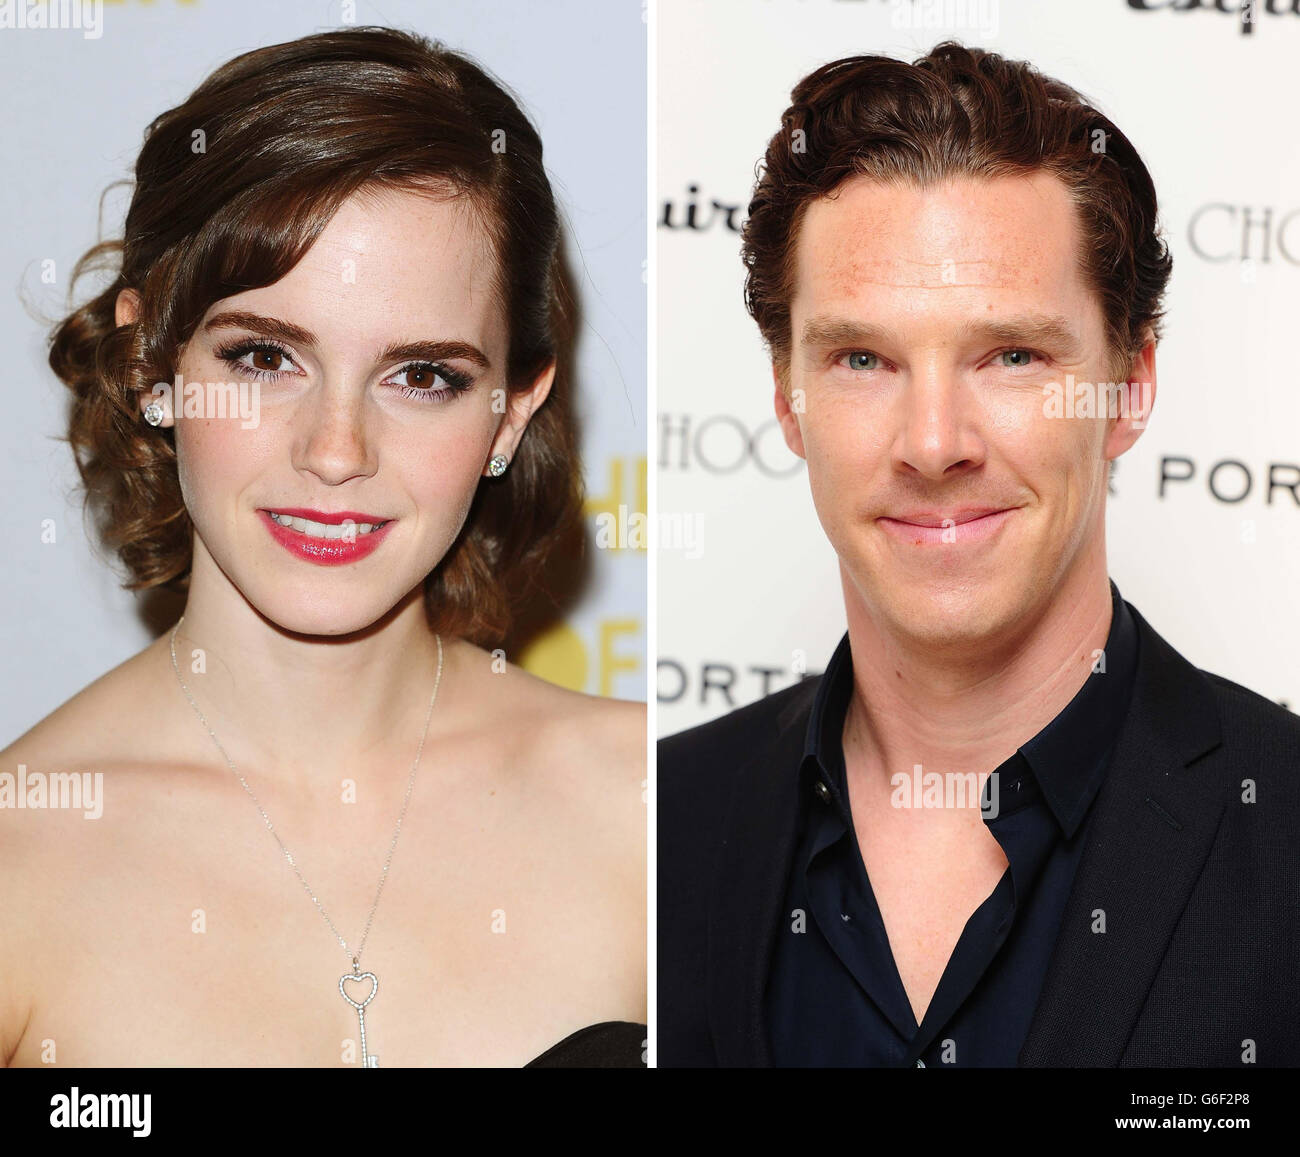 Fotos de archivo sin fecha de Emma Watson y Benedict Cumberbatch que han sido nombradas las estrellas de cine más sexy del mundo. Foto de stock